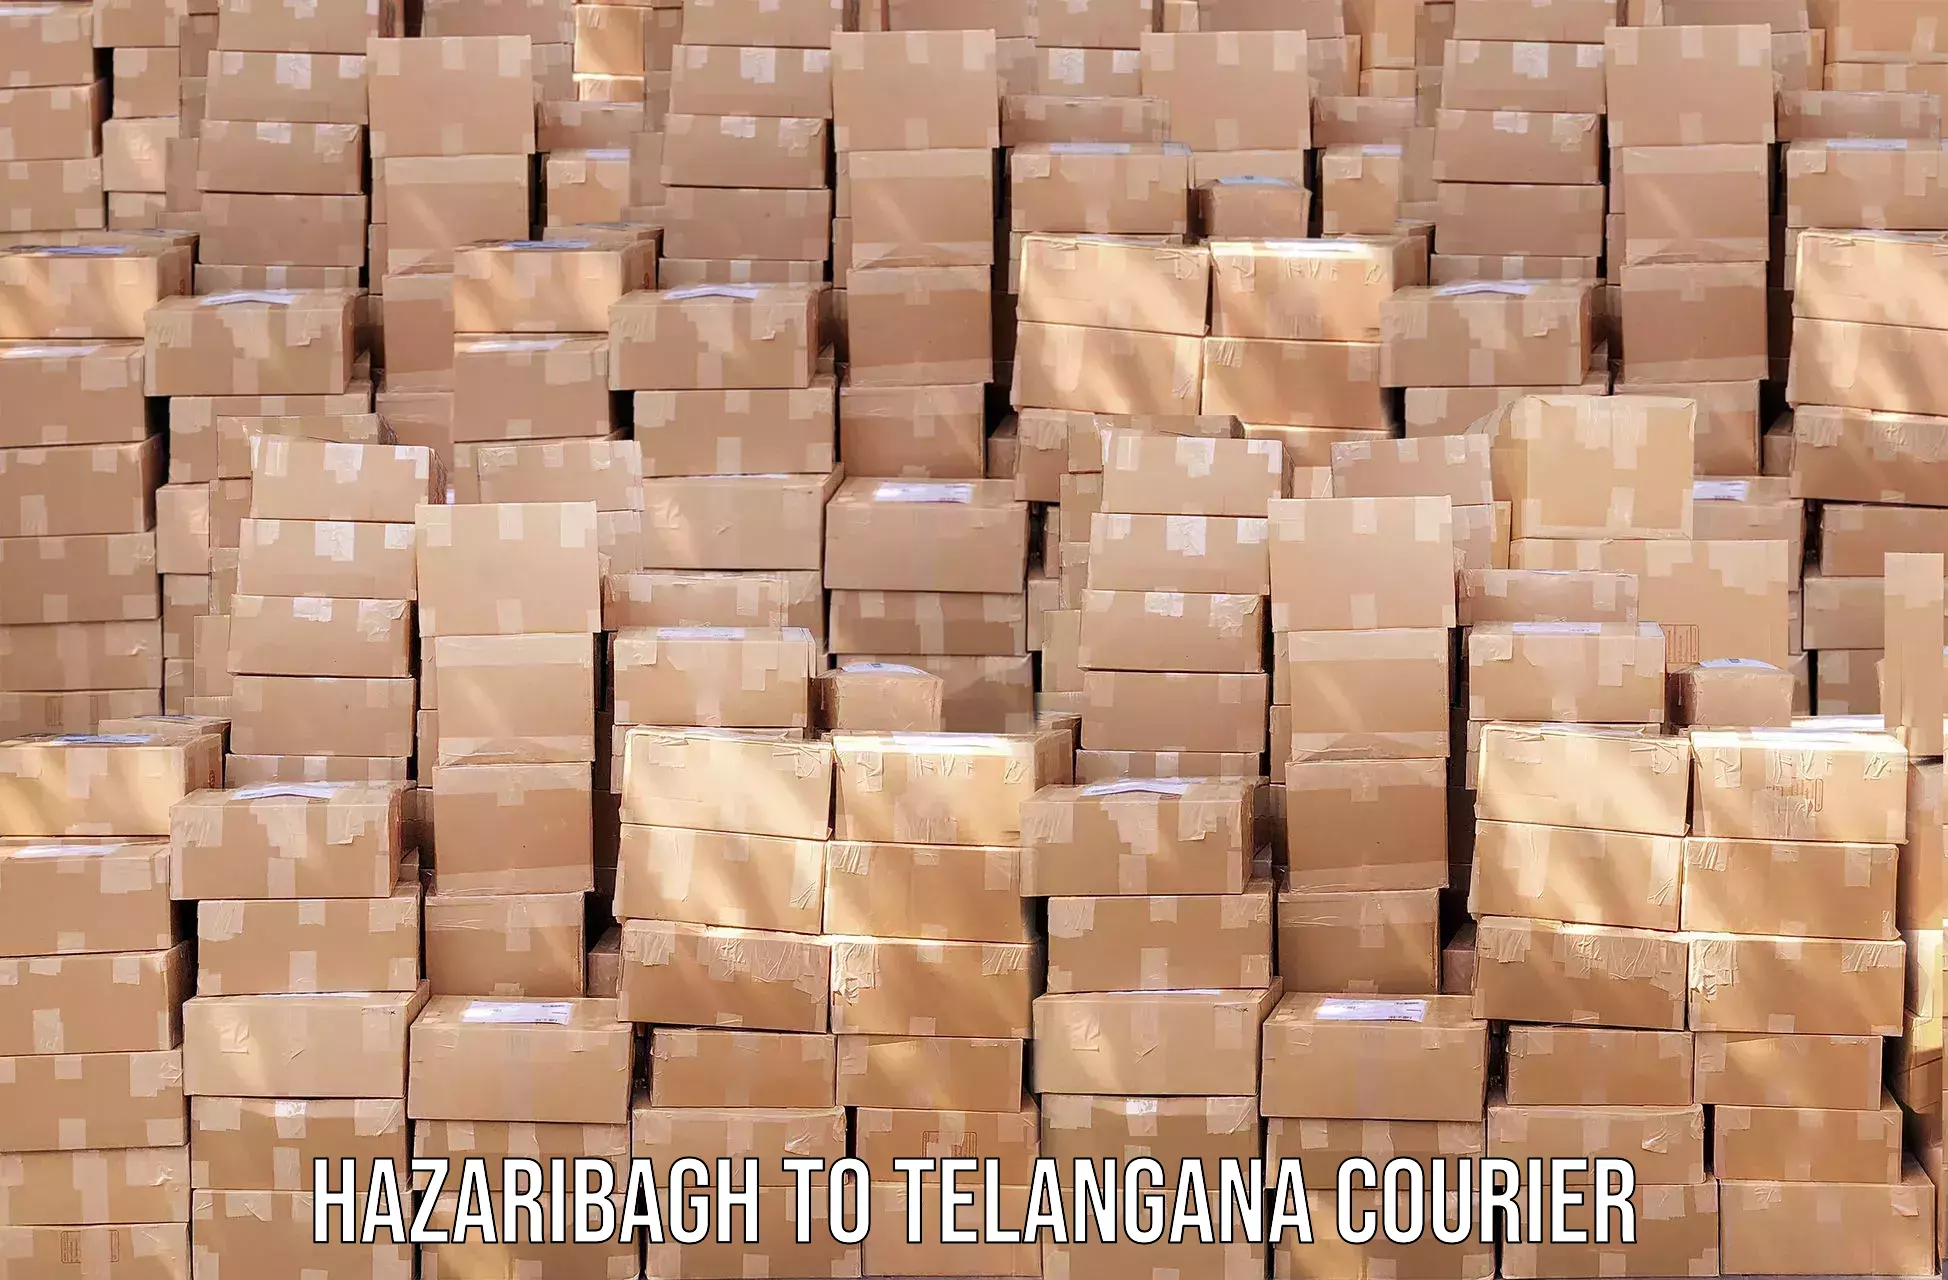 Efficient parcel transport Hazaribagh to Patancheru